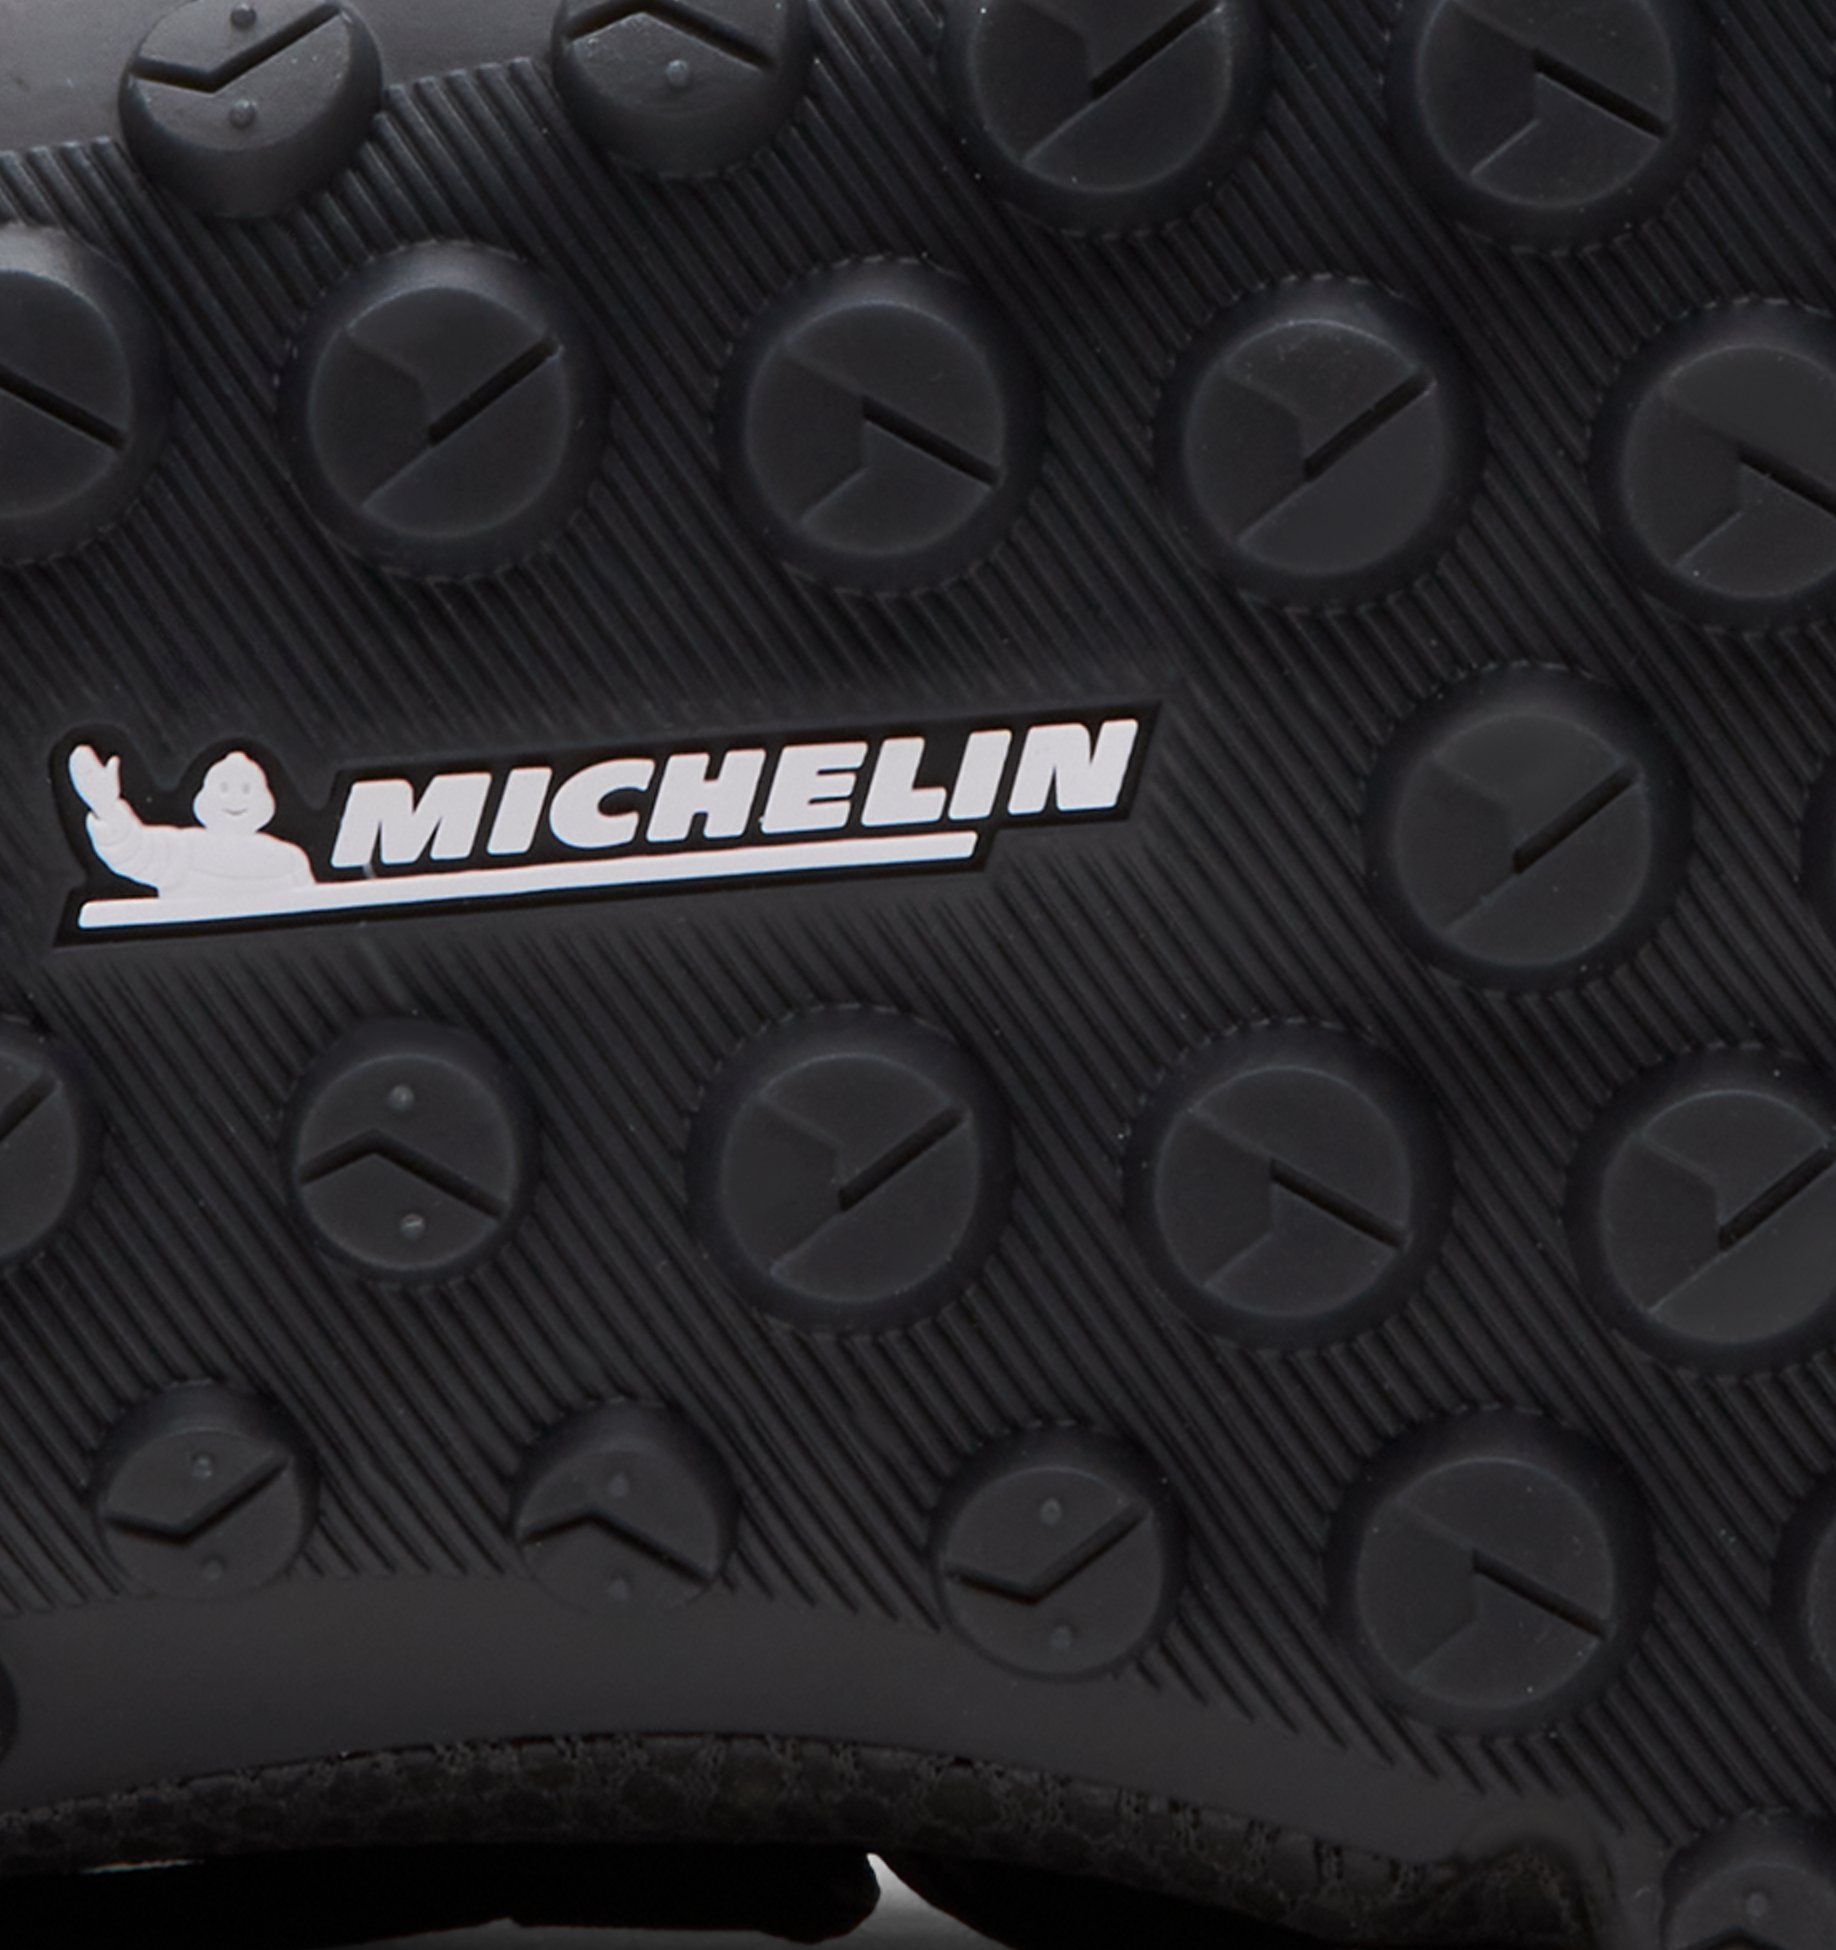 Under Armor Michelin Shoes Hot Sale | bellvalefarms.com